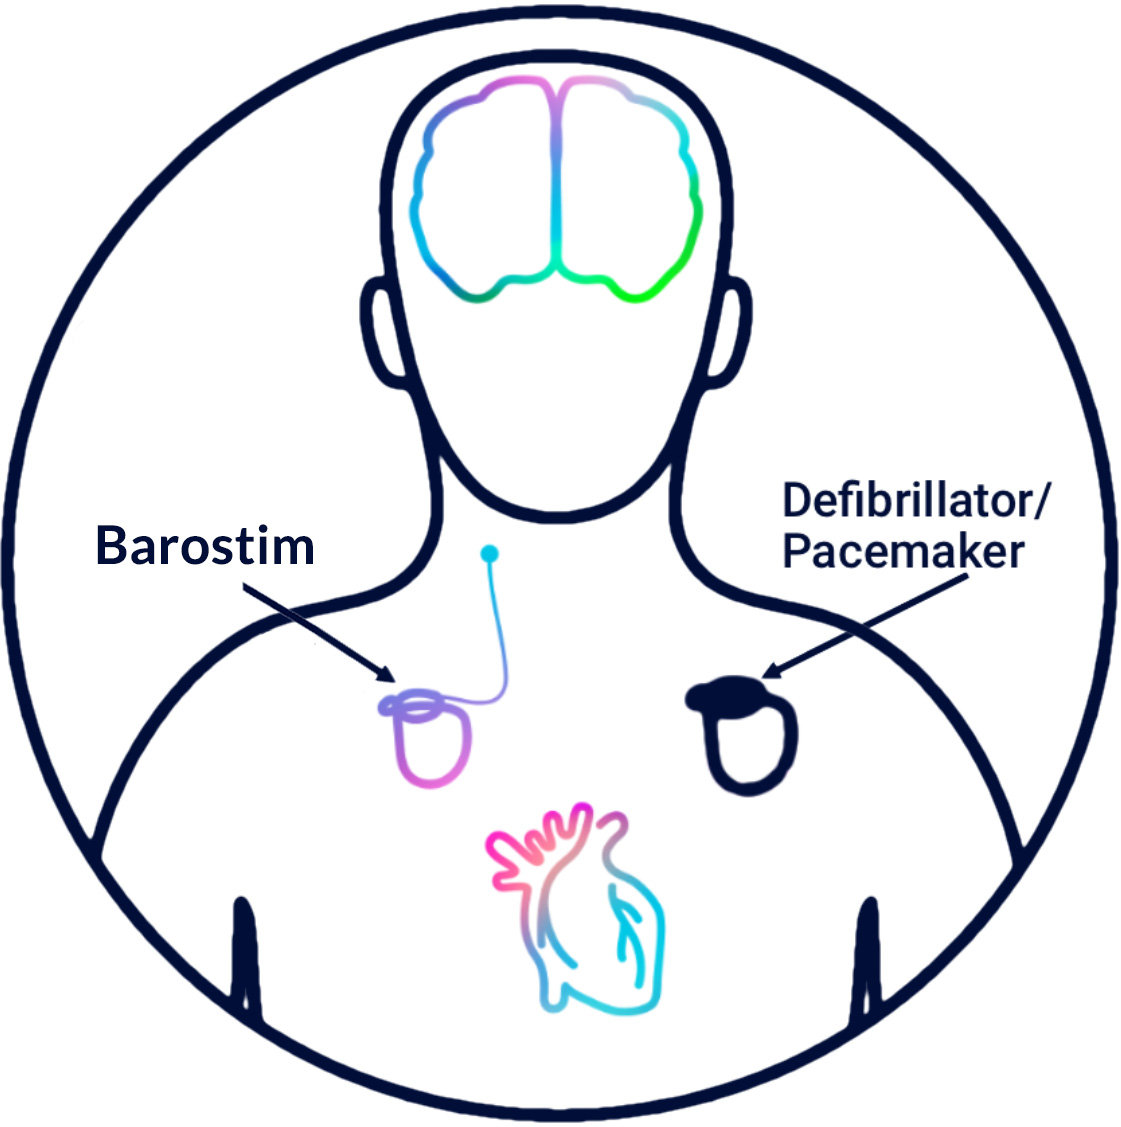 Barostim is not a defibrillator